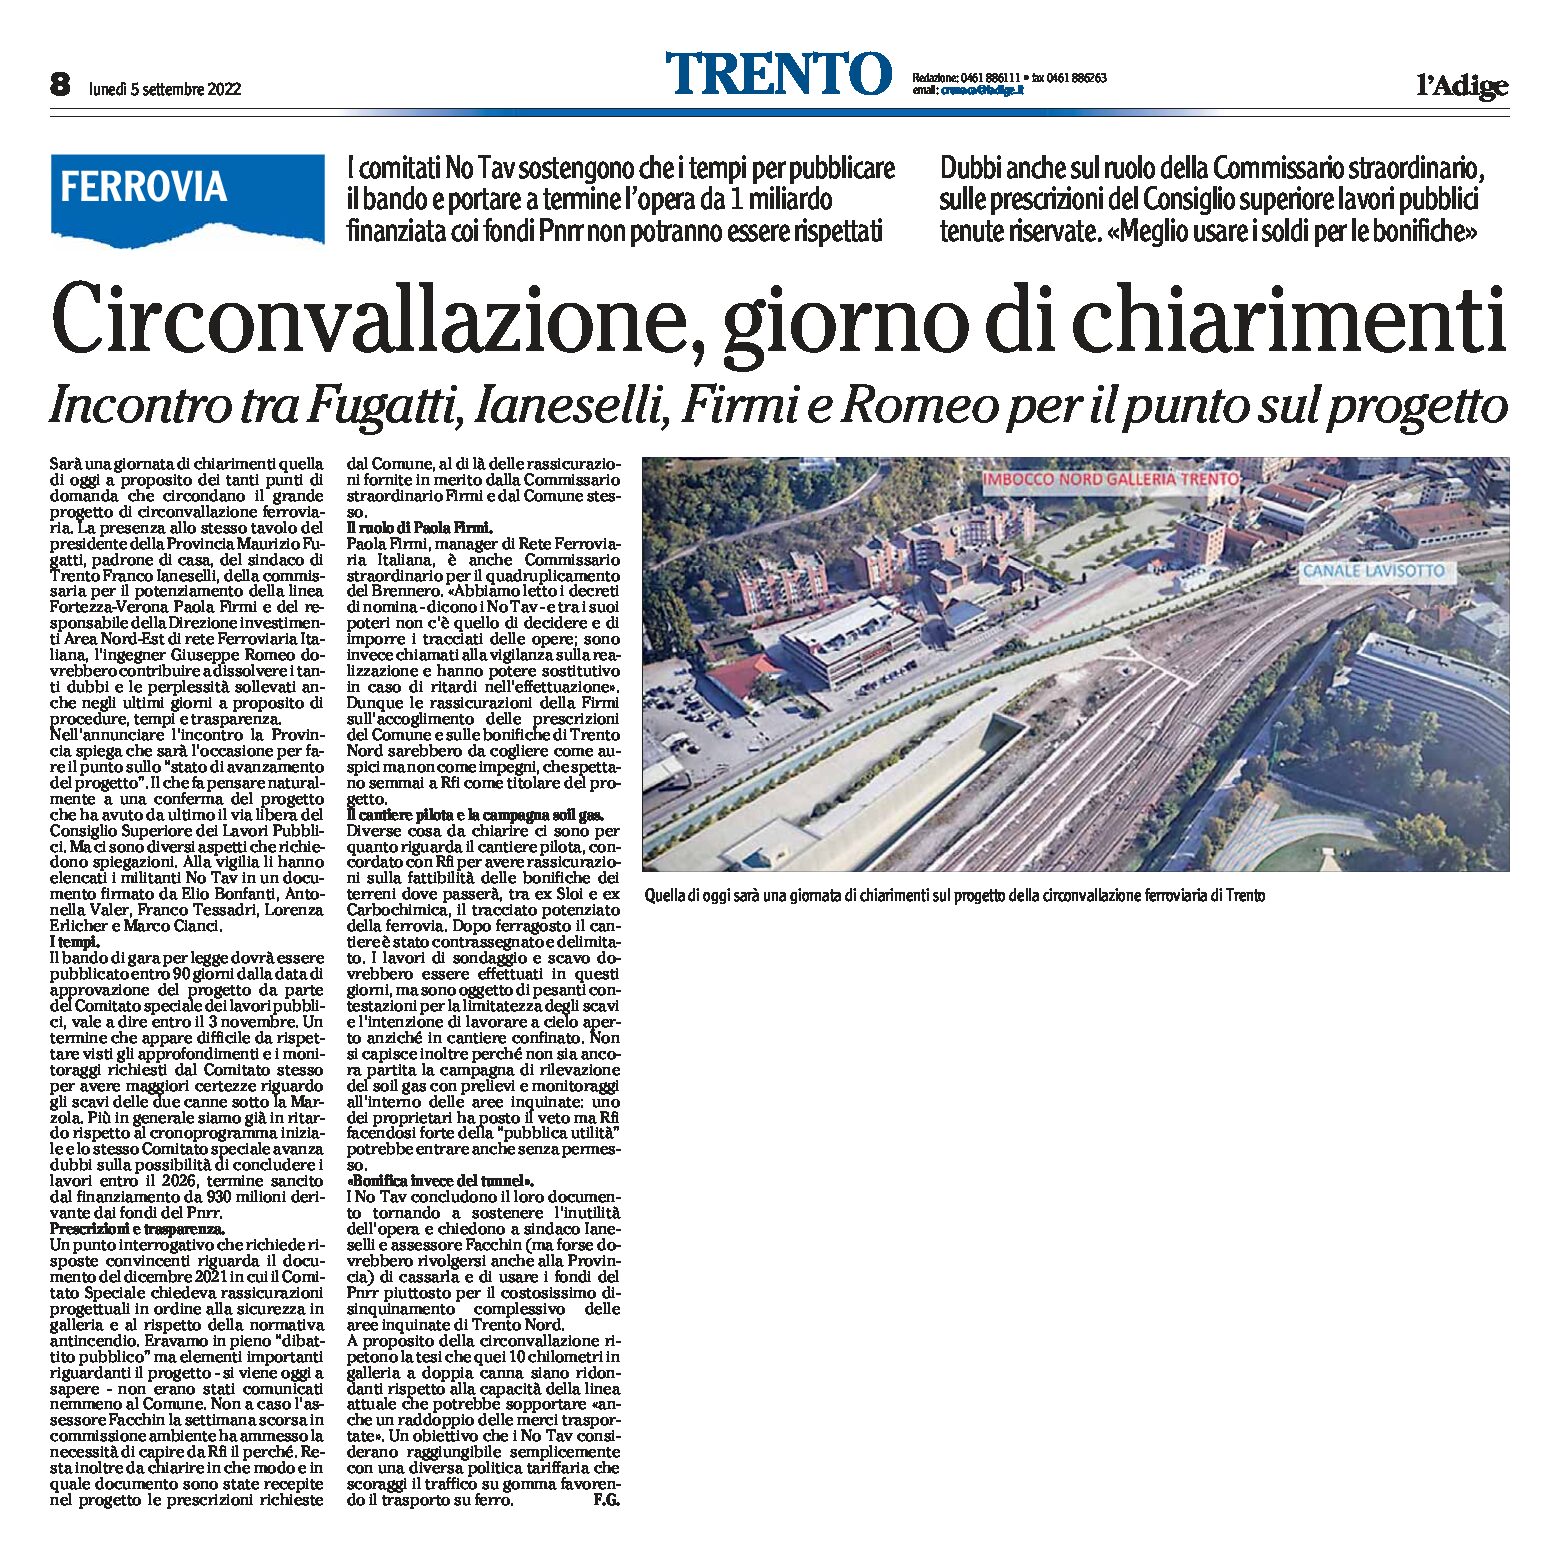 Trento: circonvallazione ferroviaria, giorno di chiarimenti. Incontro tra Fugatti, Ianeselli, Firmi e Romeo